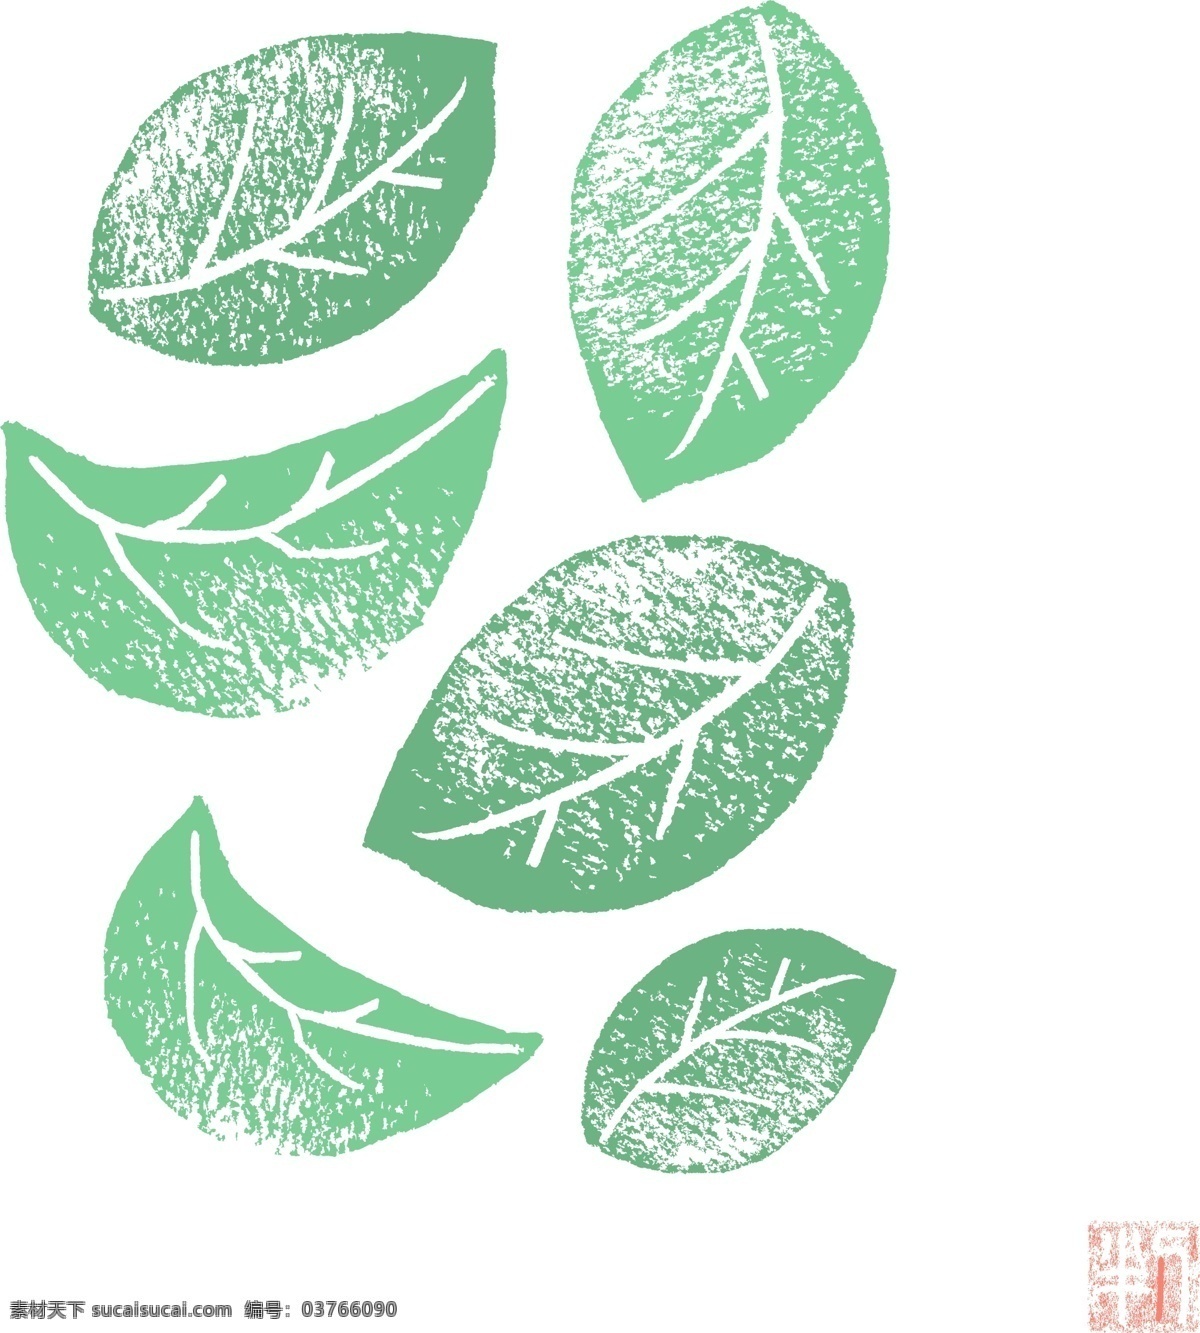 绿色 树叶 设计素材 小清新 日系 图案 卡通 绘画 物品 头像 橡皮章 风格